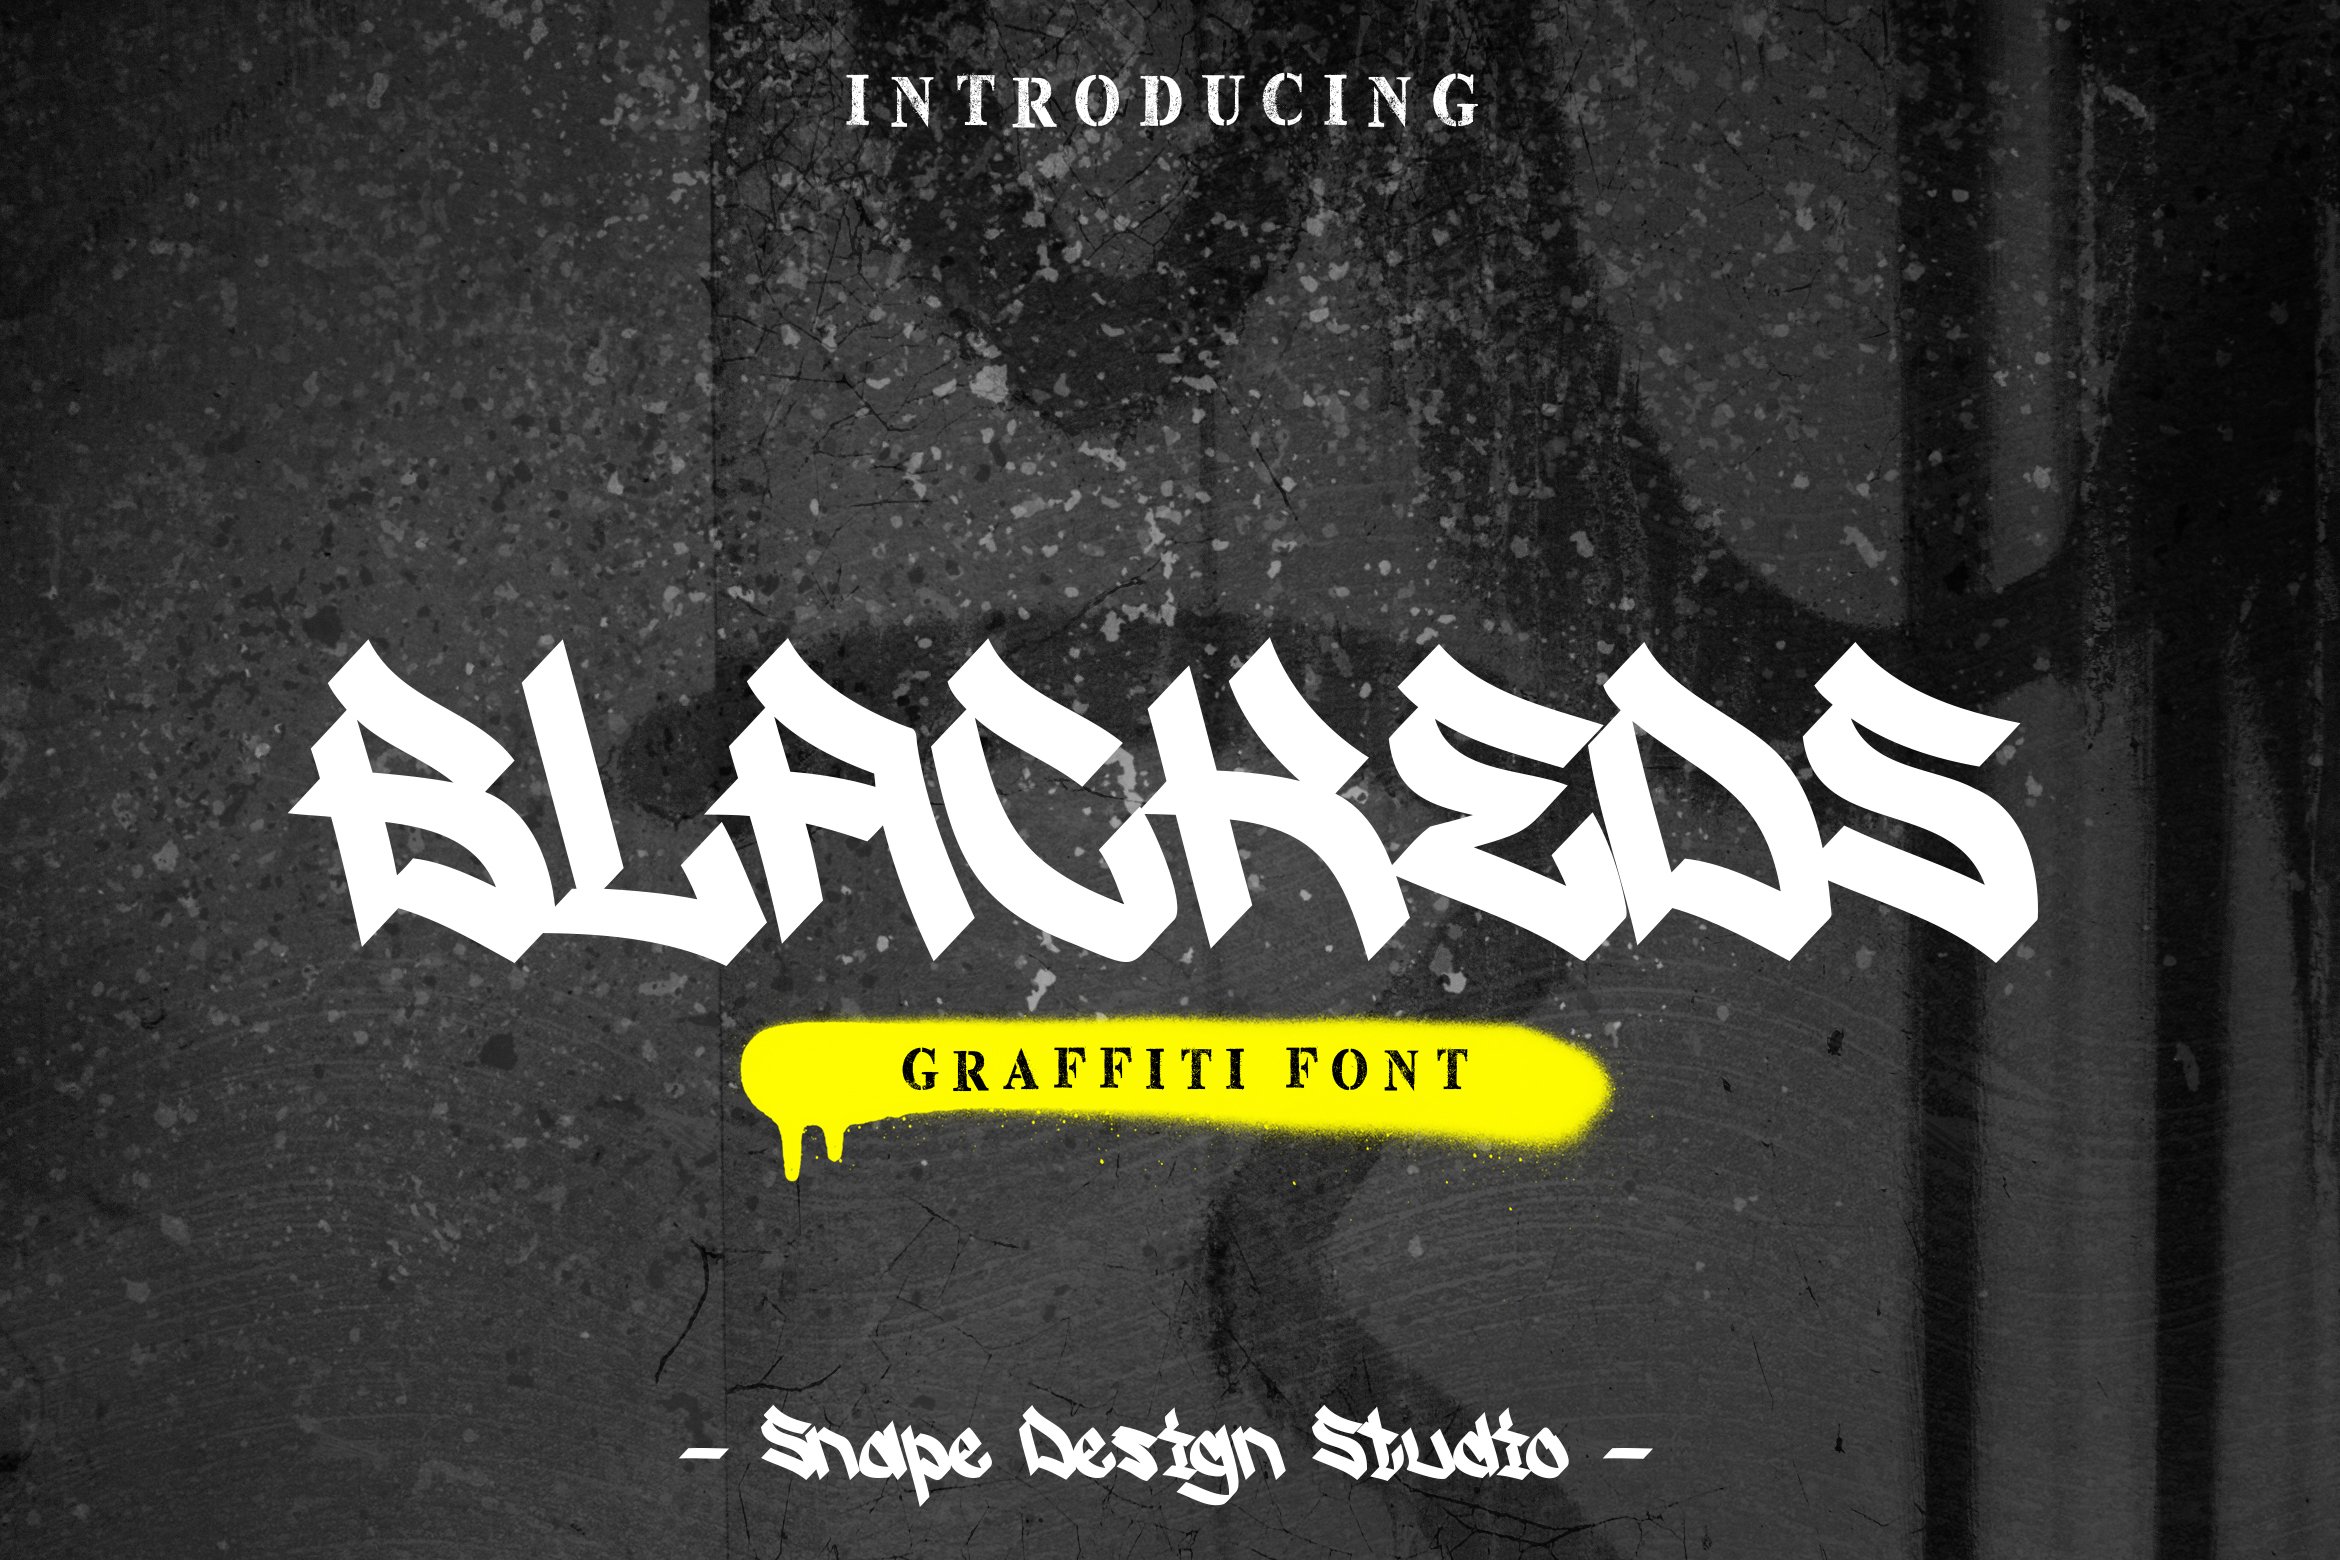 Blackeds - Graffiti Font cover image.